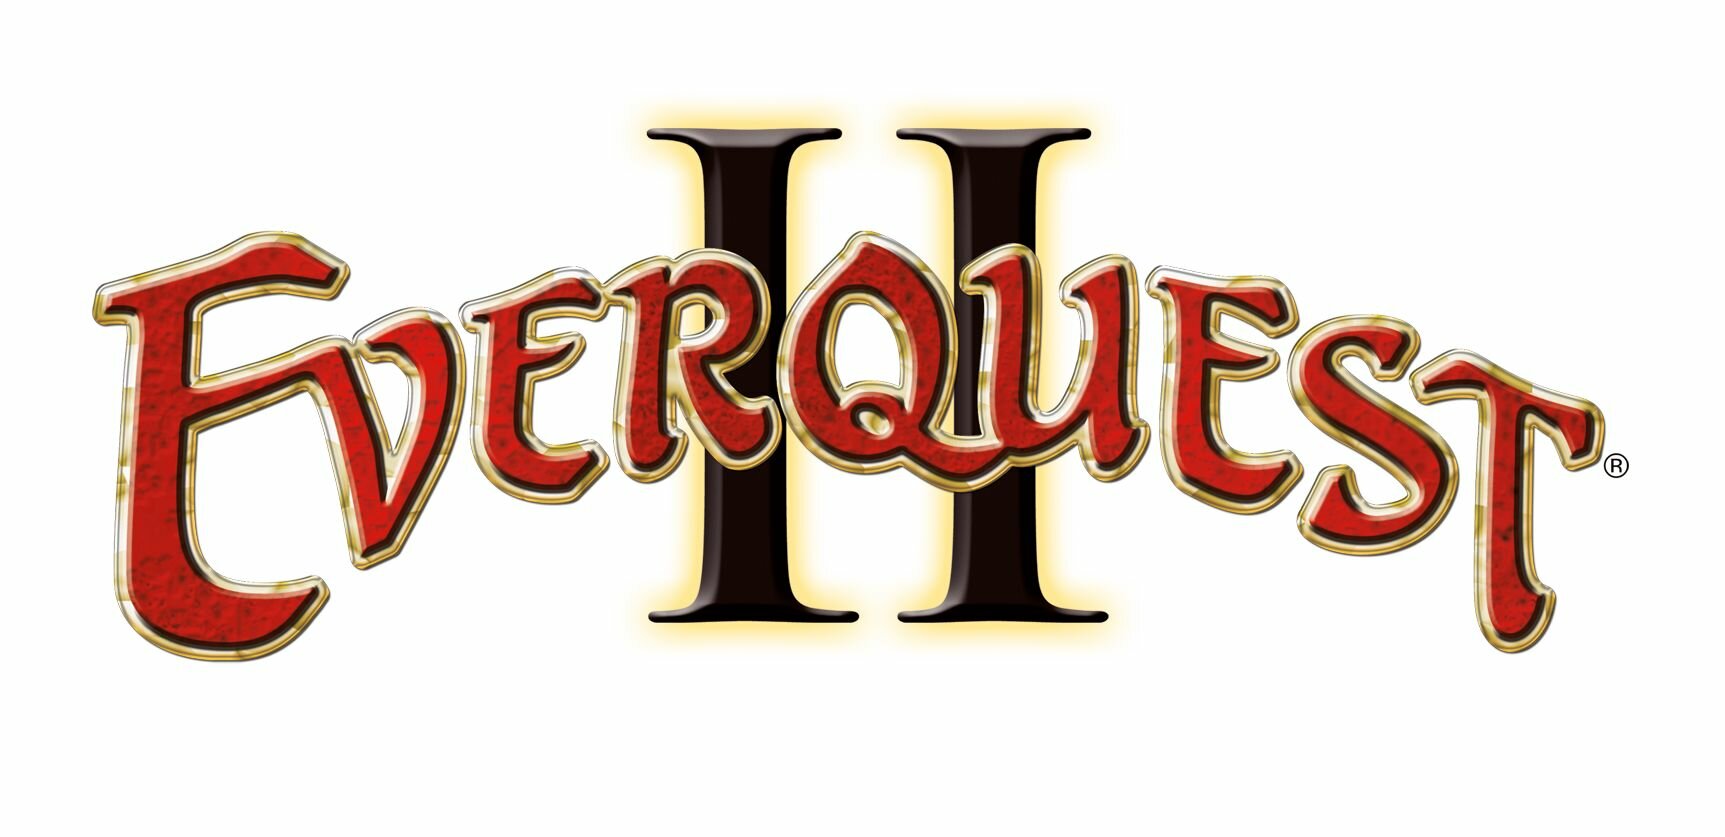 Everquest II Logo